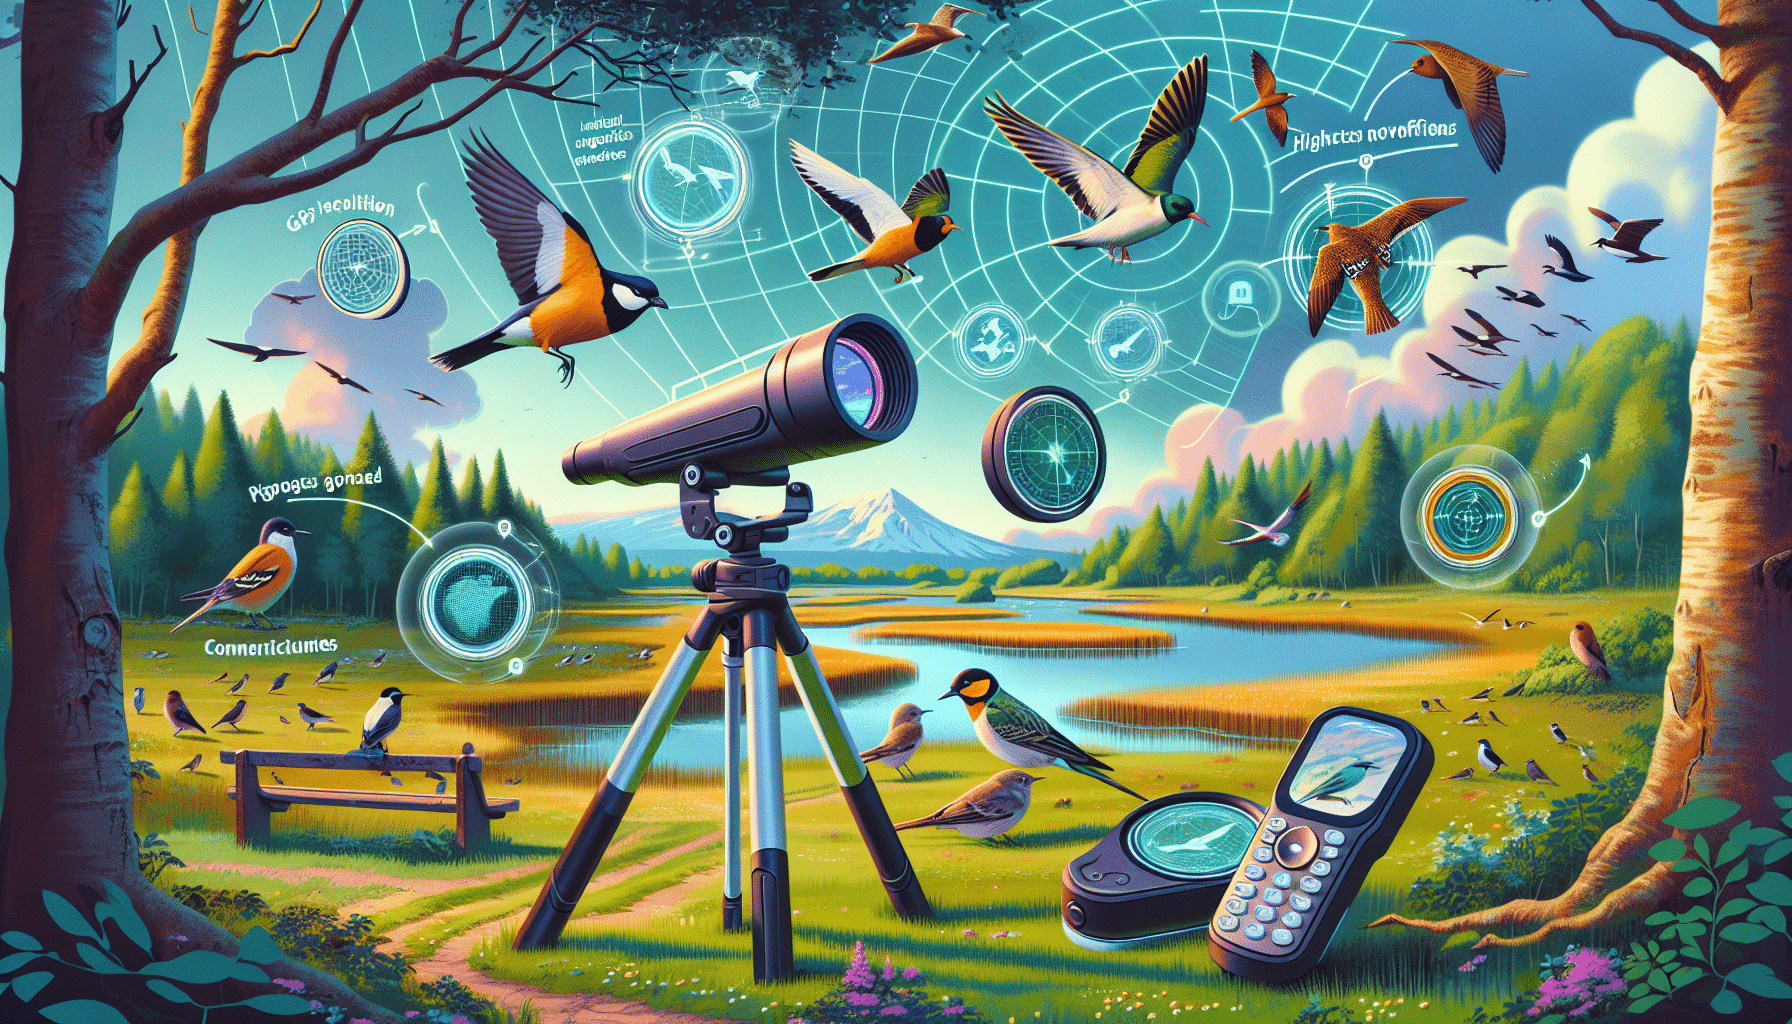 preskúmajte, ako by tieto technologické inovácie mohli zmeniť zážitok z pozorovania vtáctva a pozdvihnúť ho na novú úroveň.